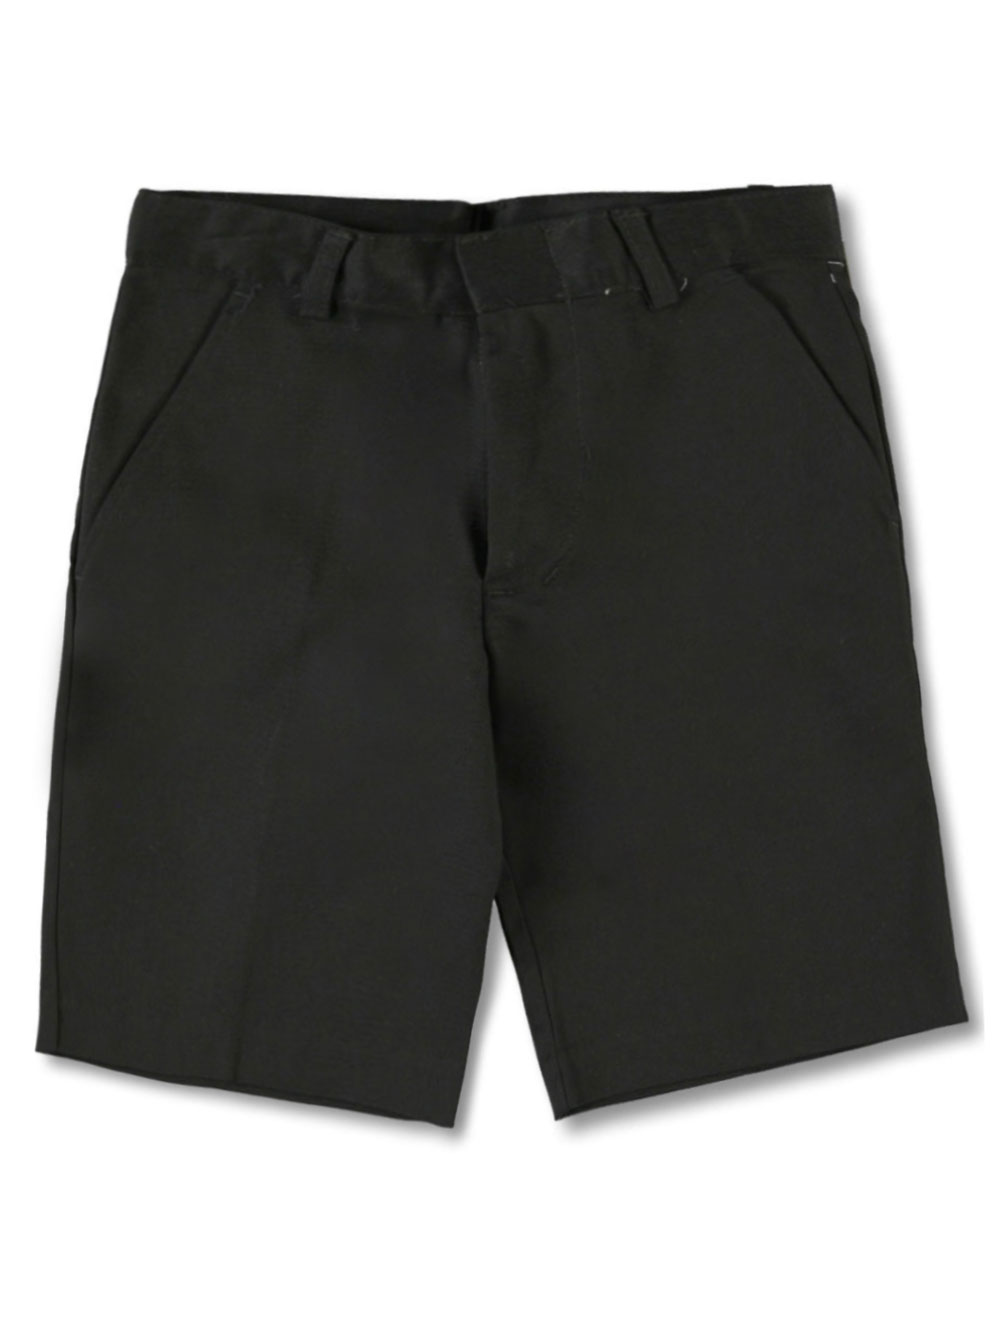 Khaki Shorts/Skorts